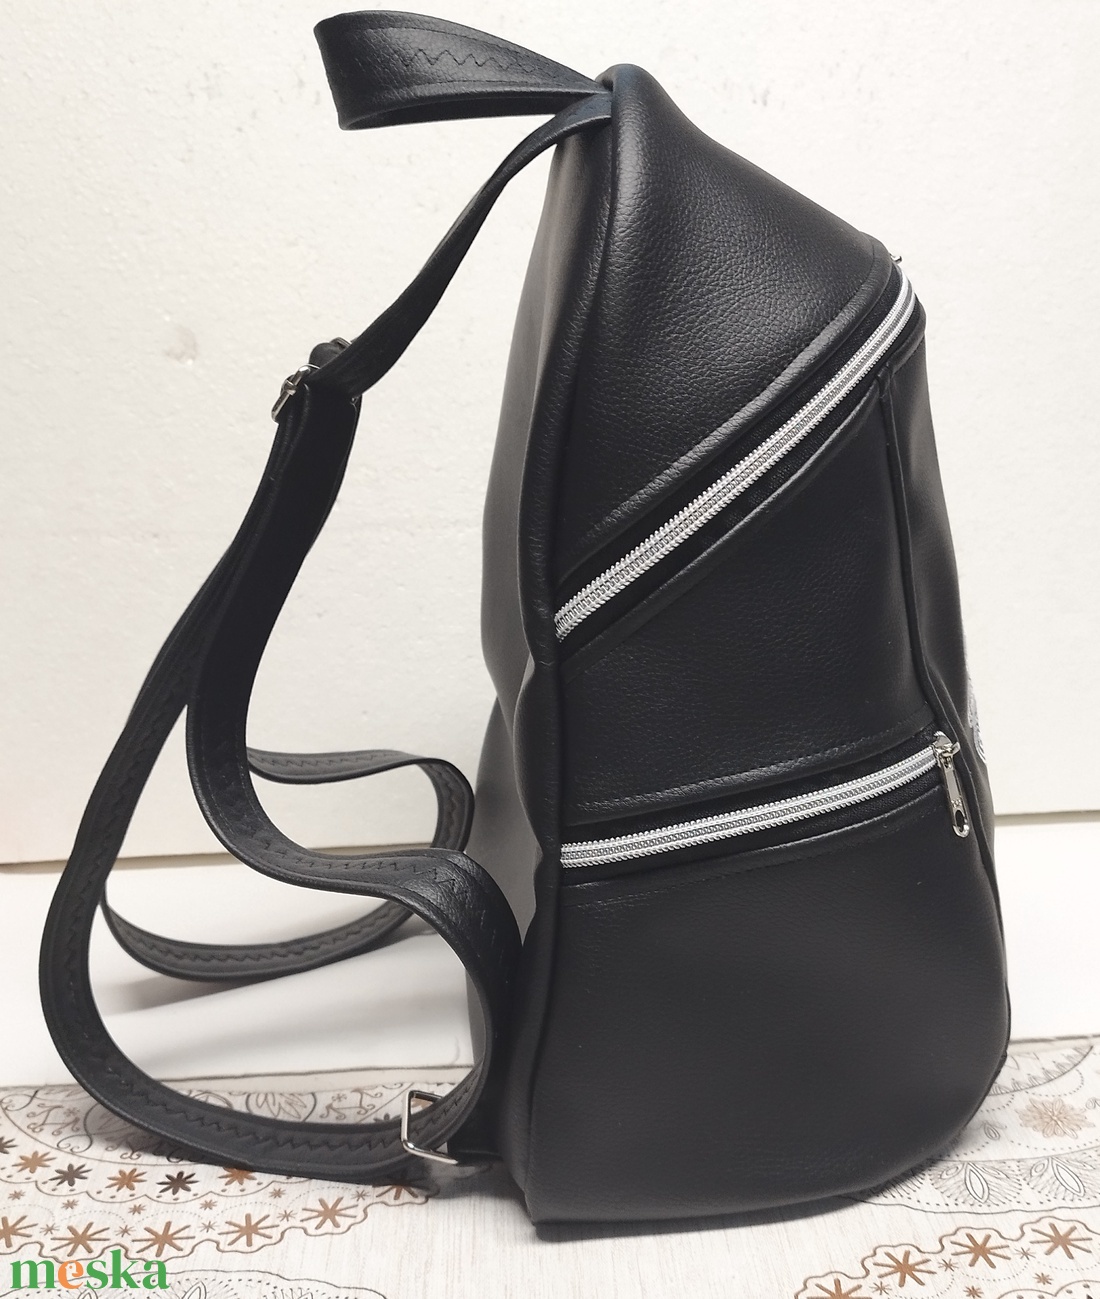 MAXIM BackPack L hátizsák - Elegáns fekete hímzett fehér mandalával textilbőr pántokkal 35x28x16 - táska & tok - hátizsák - hátizsák - Meska.hu